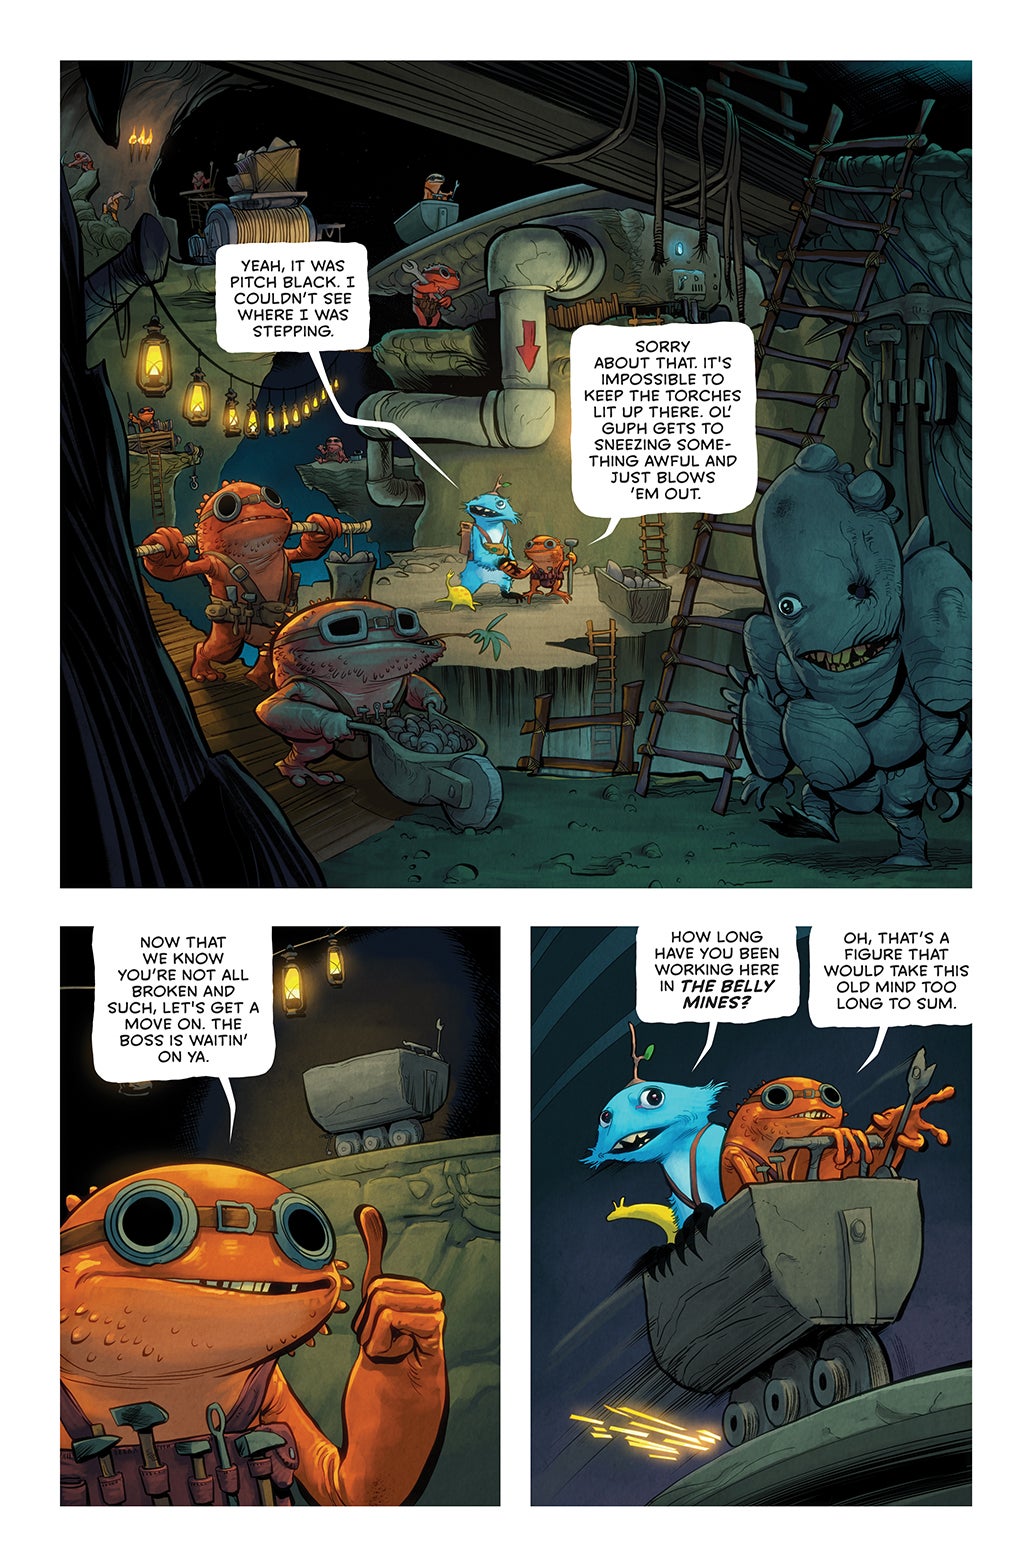 Twig #1 page 10. (Image: Image Comics)